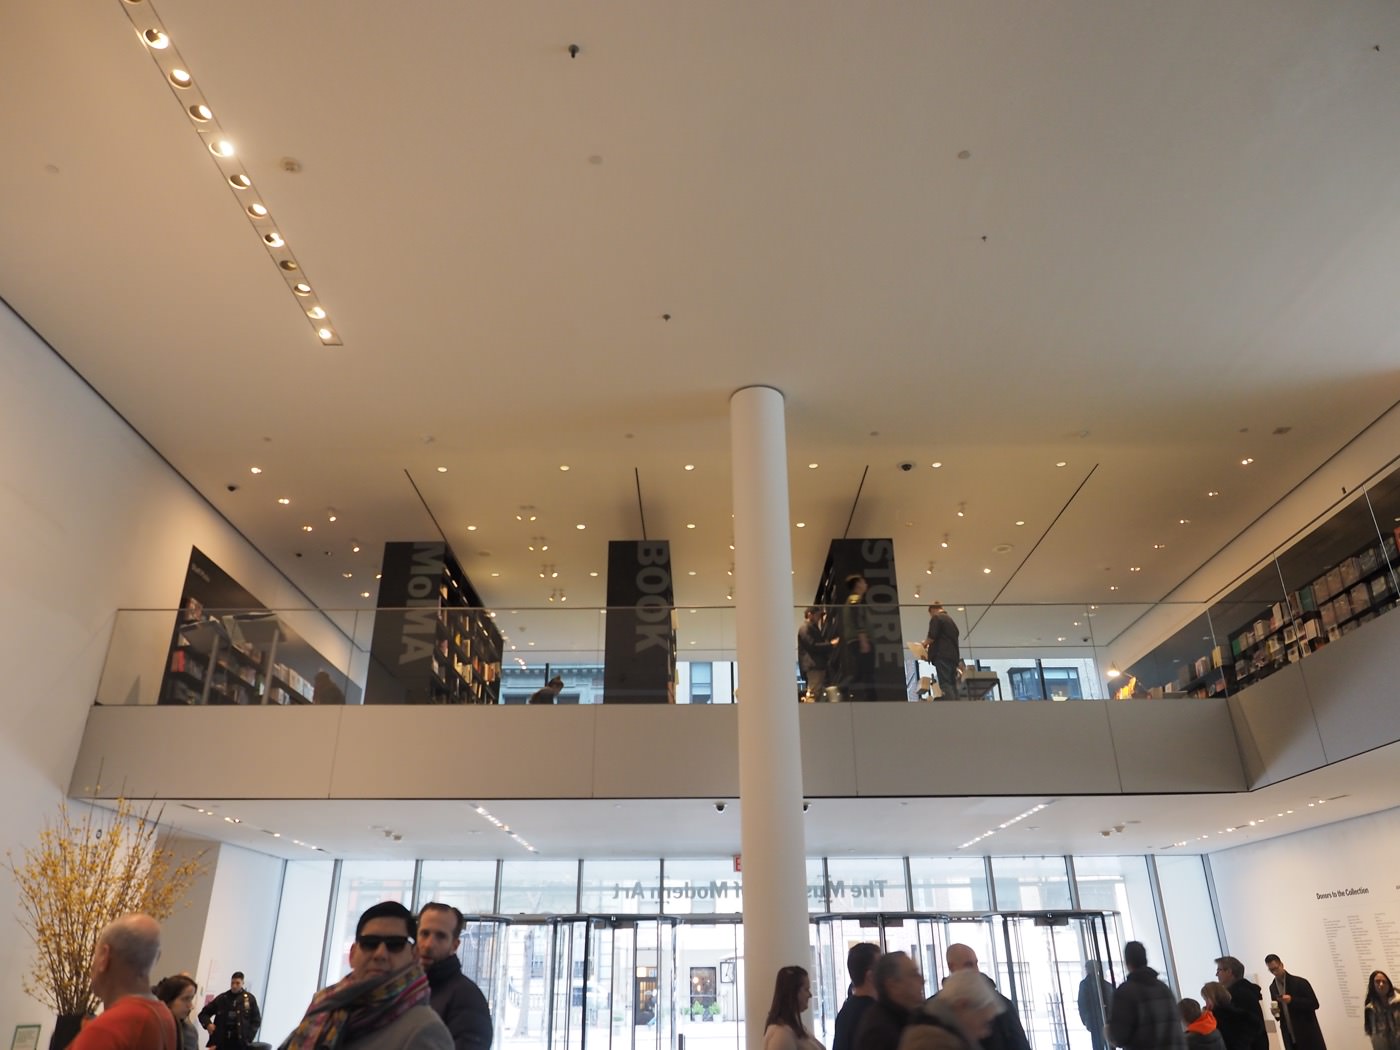 紐約景點 曼哈頓 MoMA 現代藝術博物館 The Museum of Modern Art - 一口冒險 Bitesized Adventure